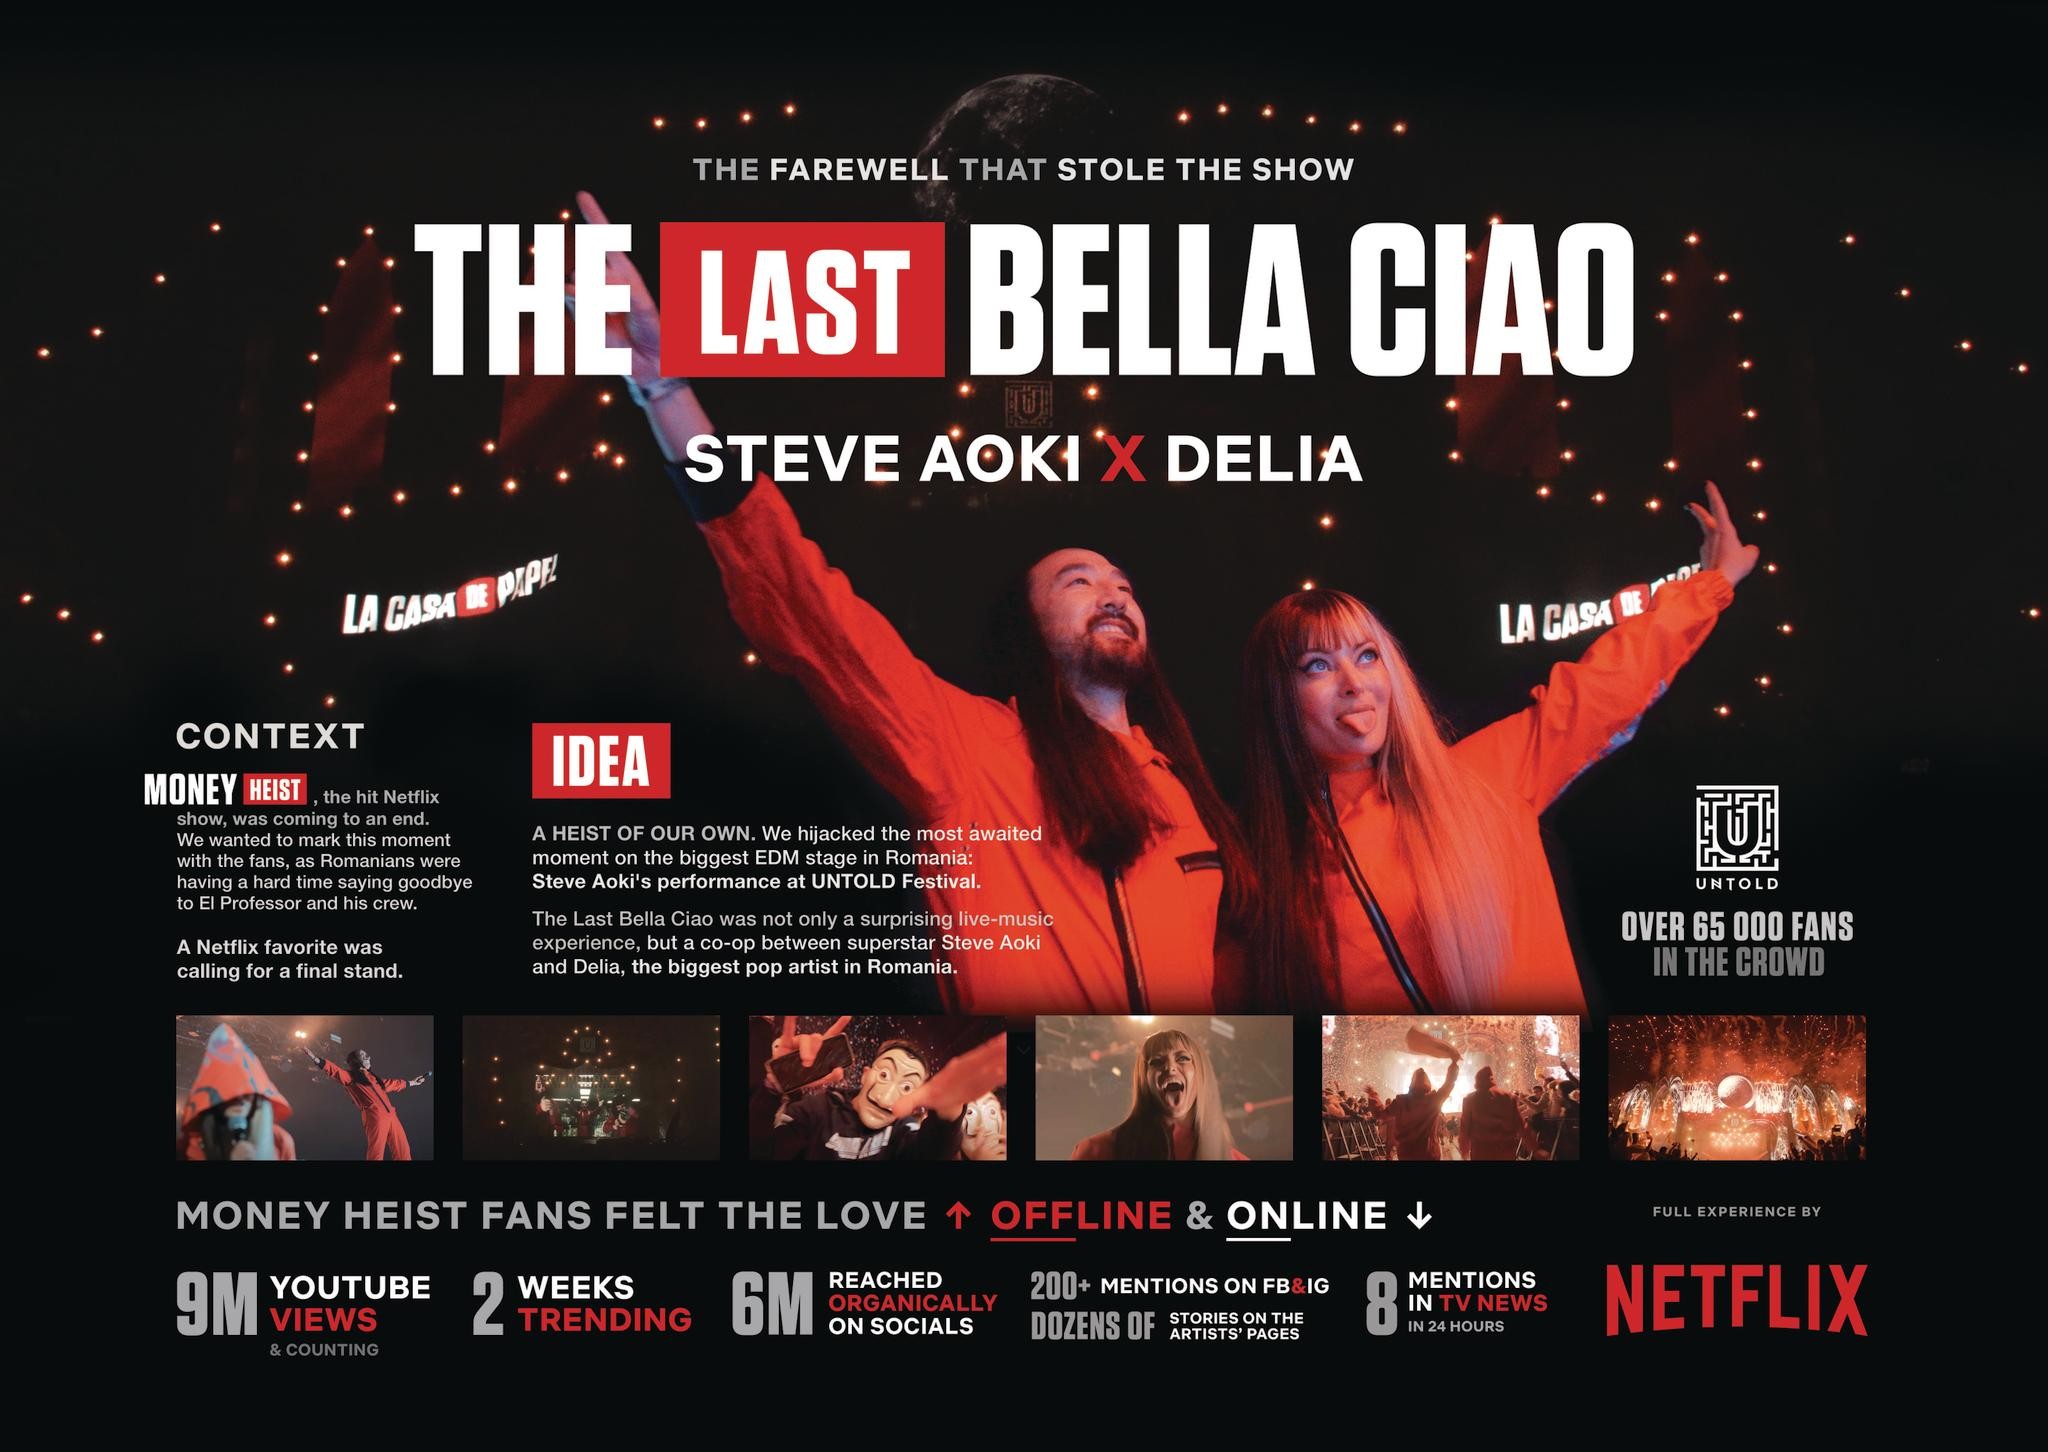 NETFLIX - THE LAST "BELLA CIAO"